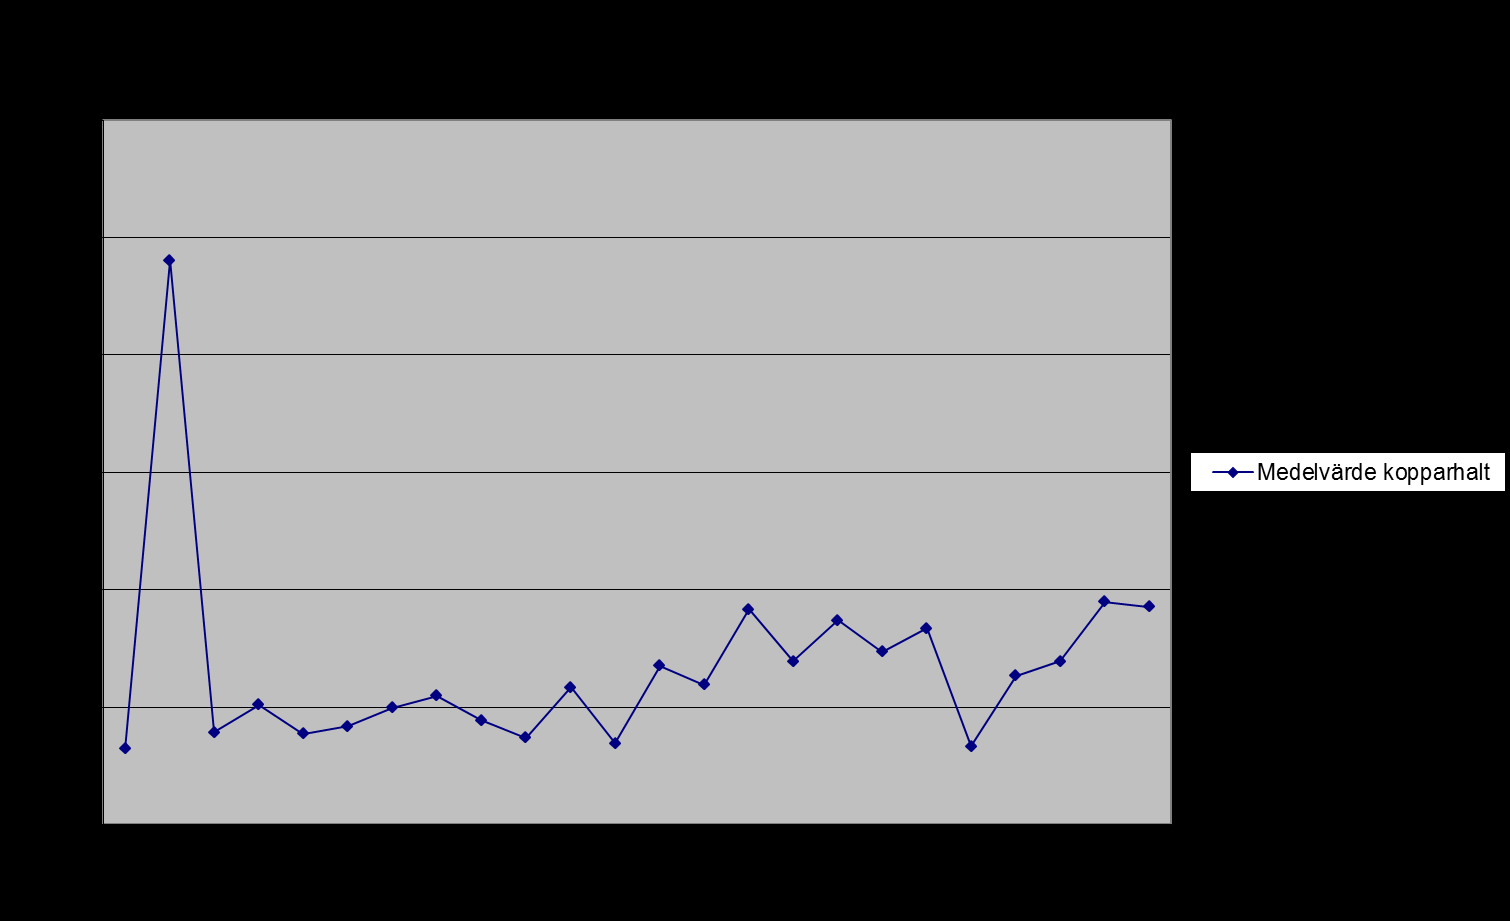 8(12) Koppar Huvudsaklig lokal utsläppskälla: ScanDust. Medelvärdet för samtliga mätplatser i Landskrona 2011 var 18,56 g/g jämfört med 18,99 g/g 2010.